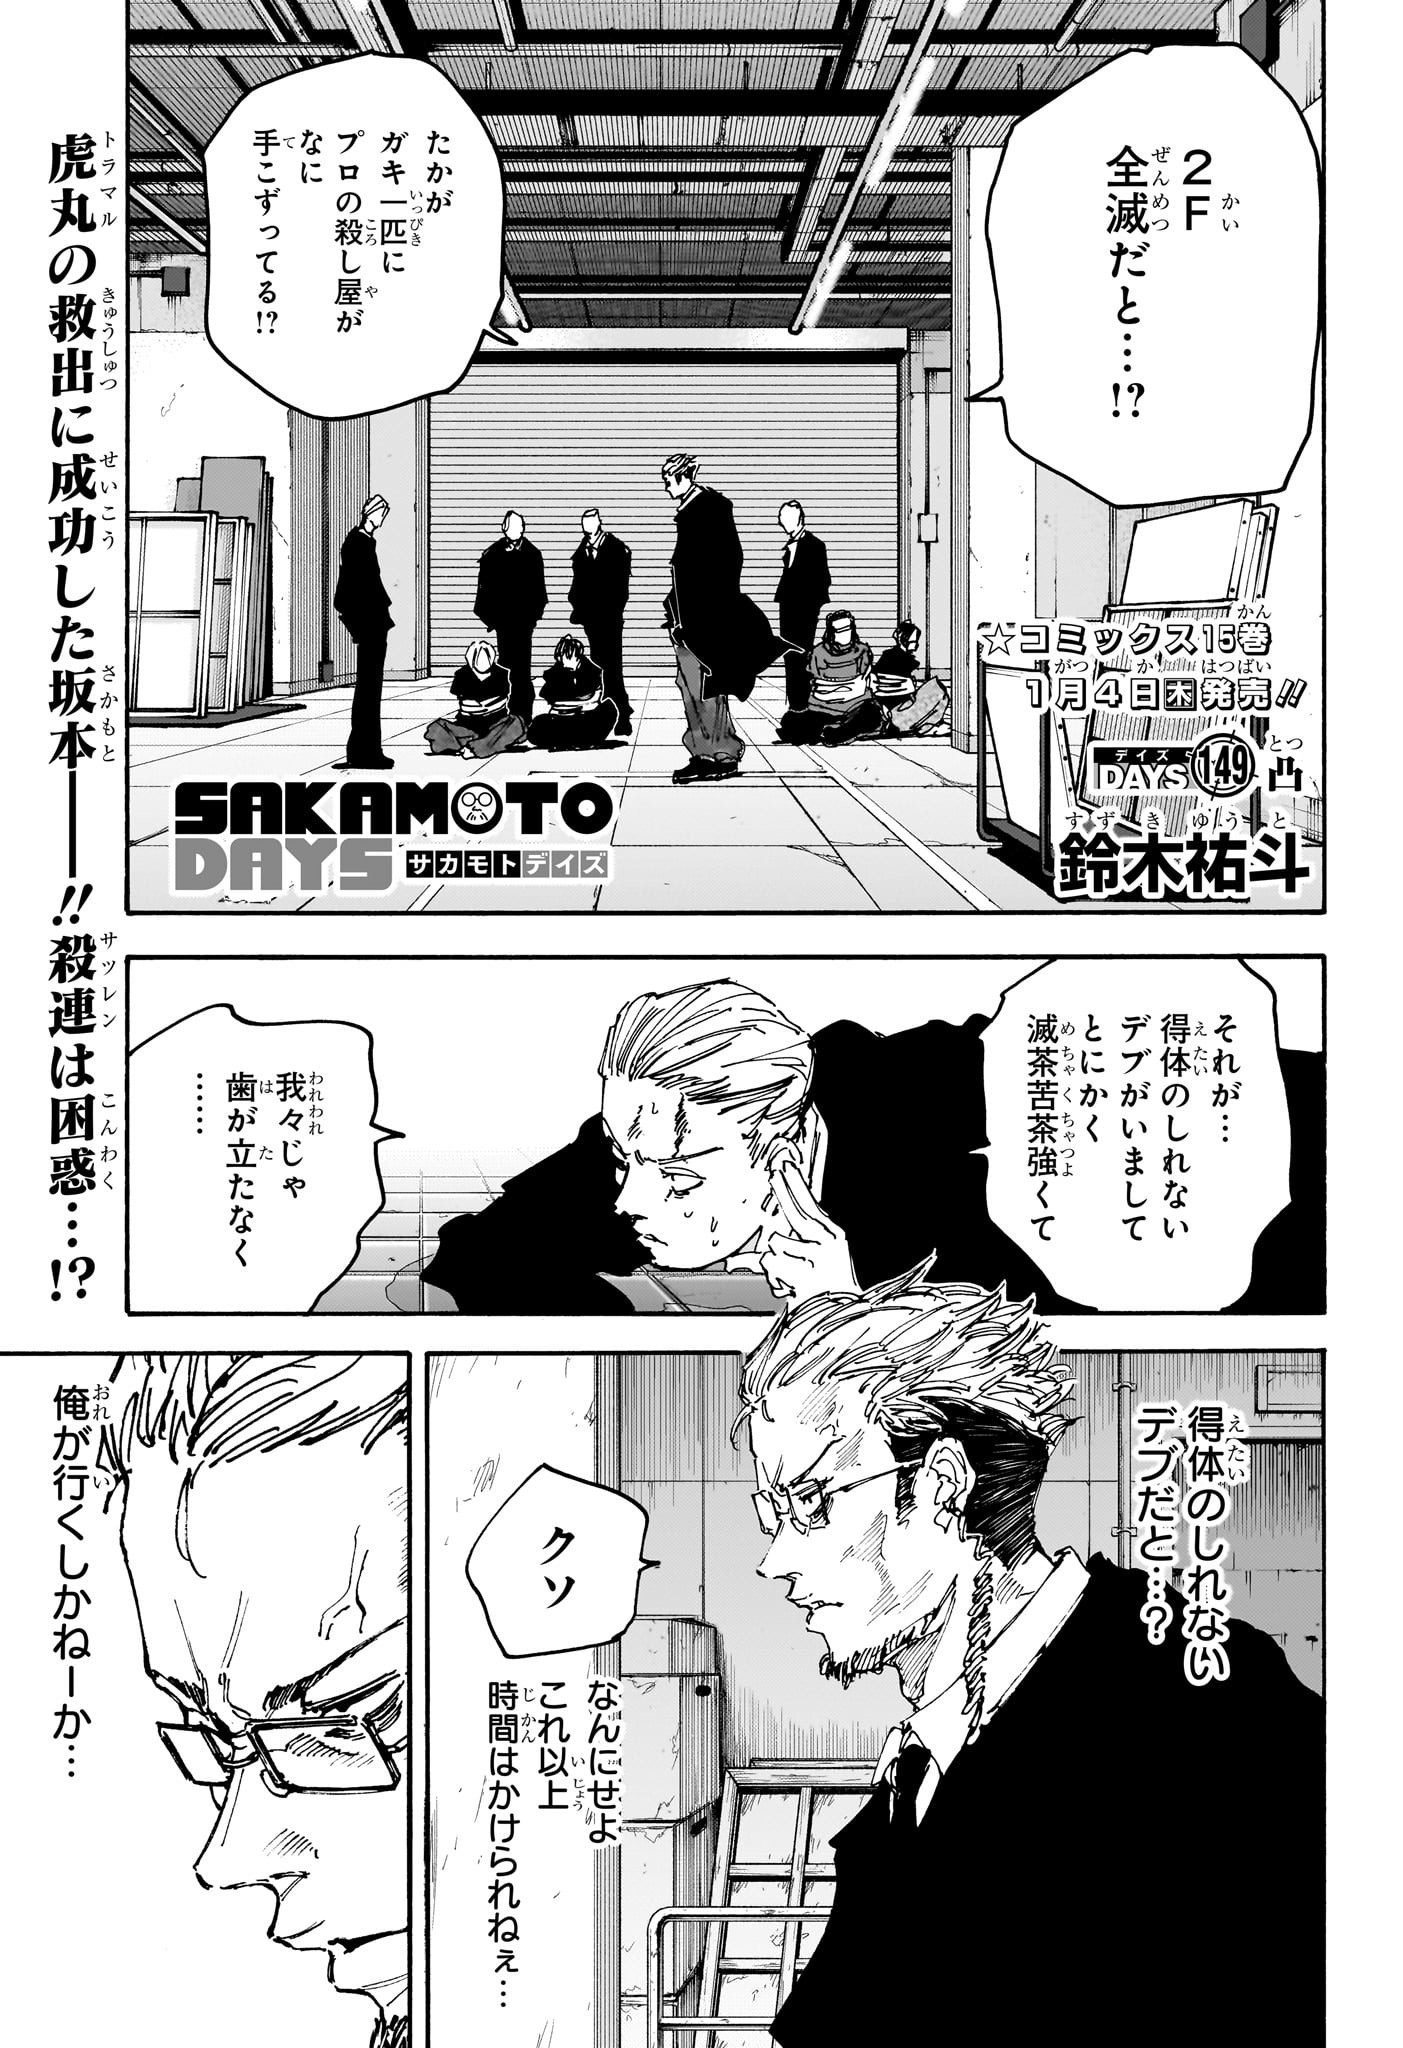 Sakamoto Days - Chapter 149 - Page 1